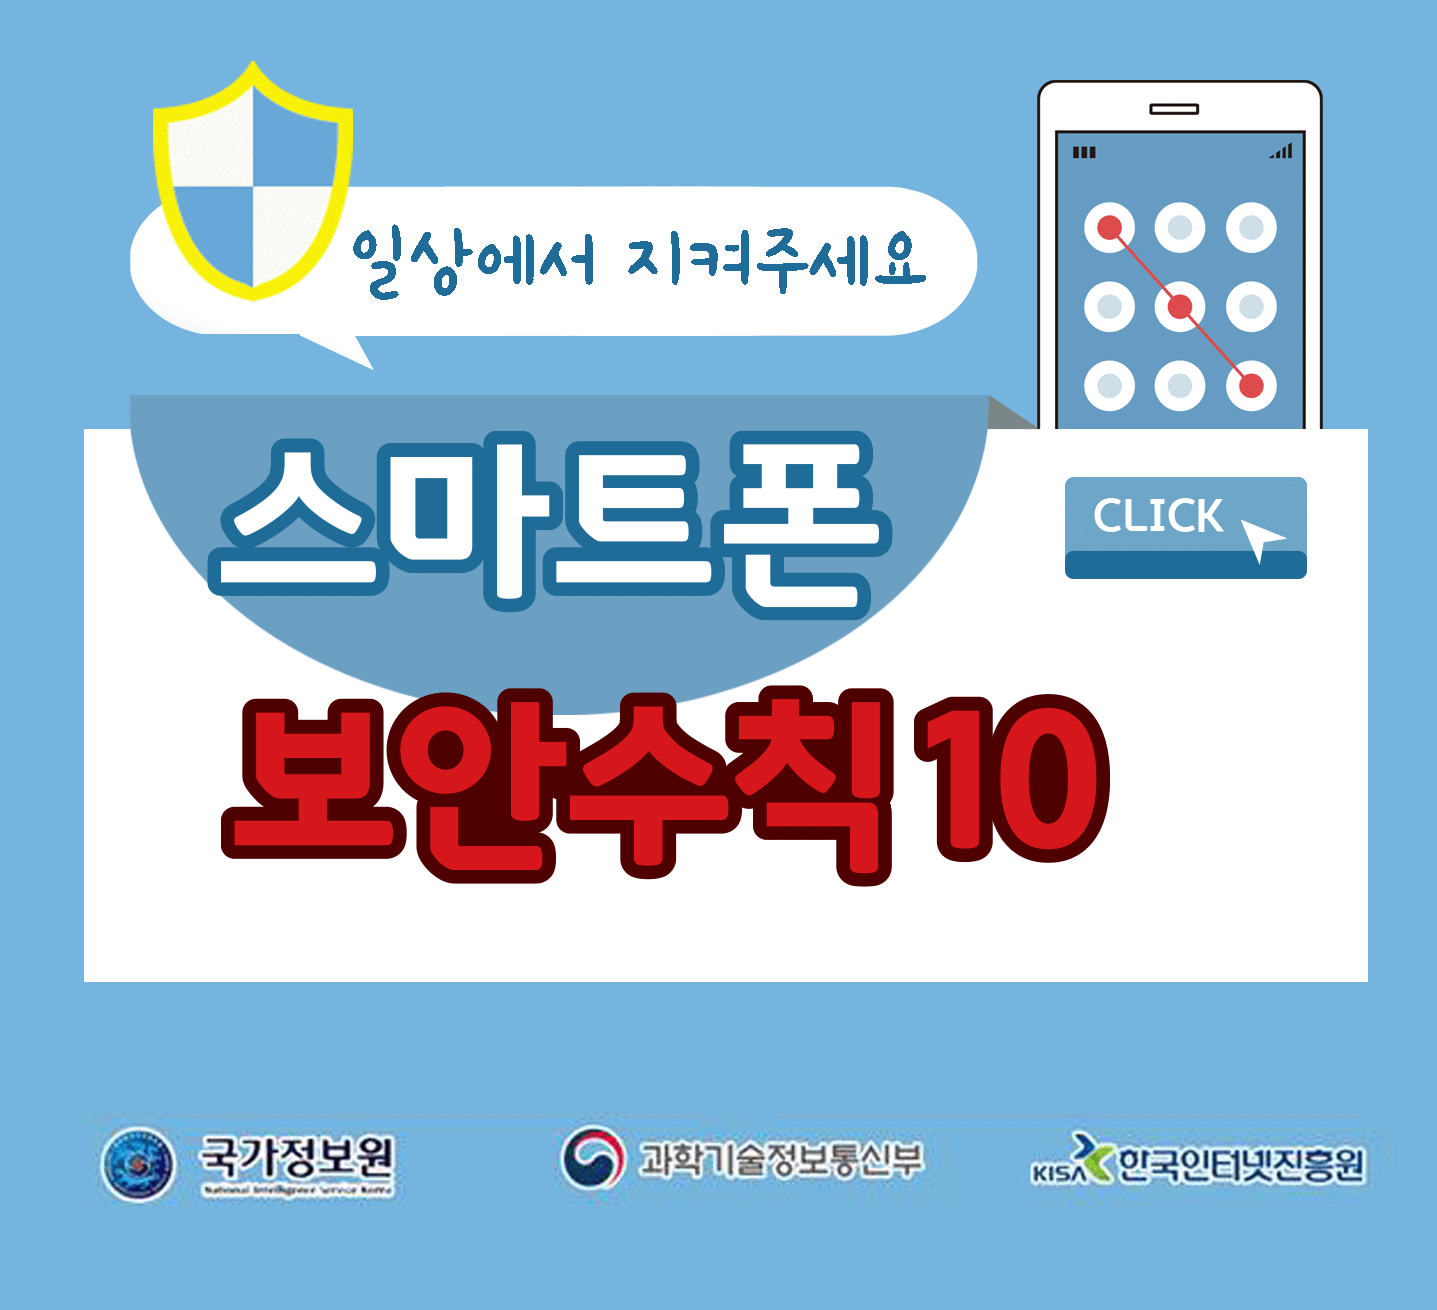 일상에서 지켜주세요
스마트폰 보안수칙 10 CLICK
국가정보원, 과학기술정보통신부, 한국인터넷진흥원;jsessionid=B73EAA13759D960EAE9BEA1CC1F989EA